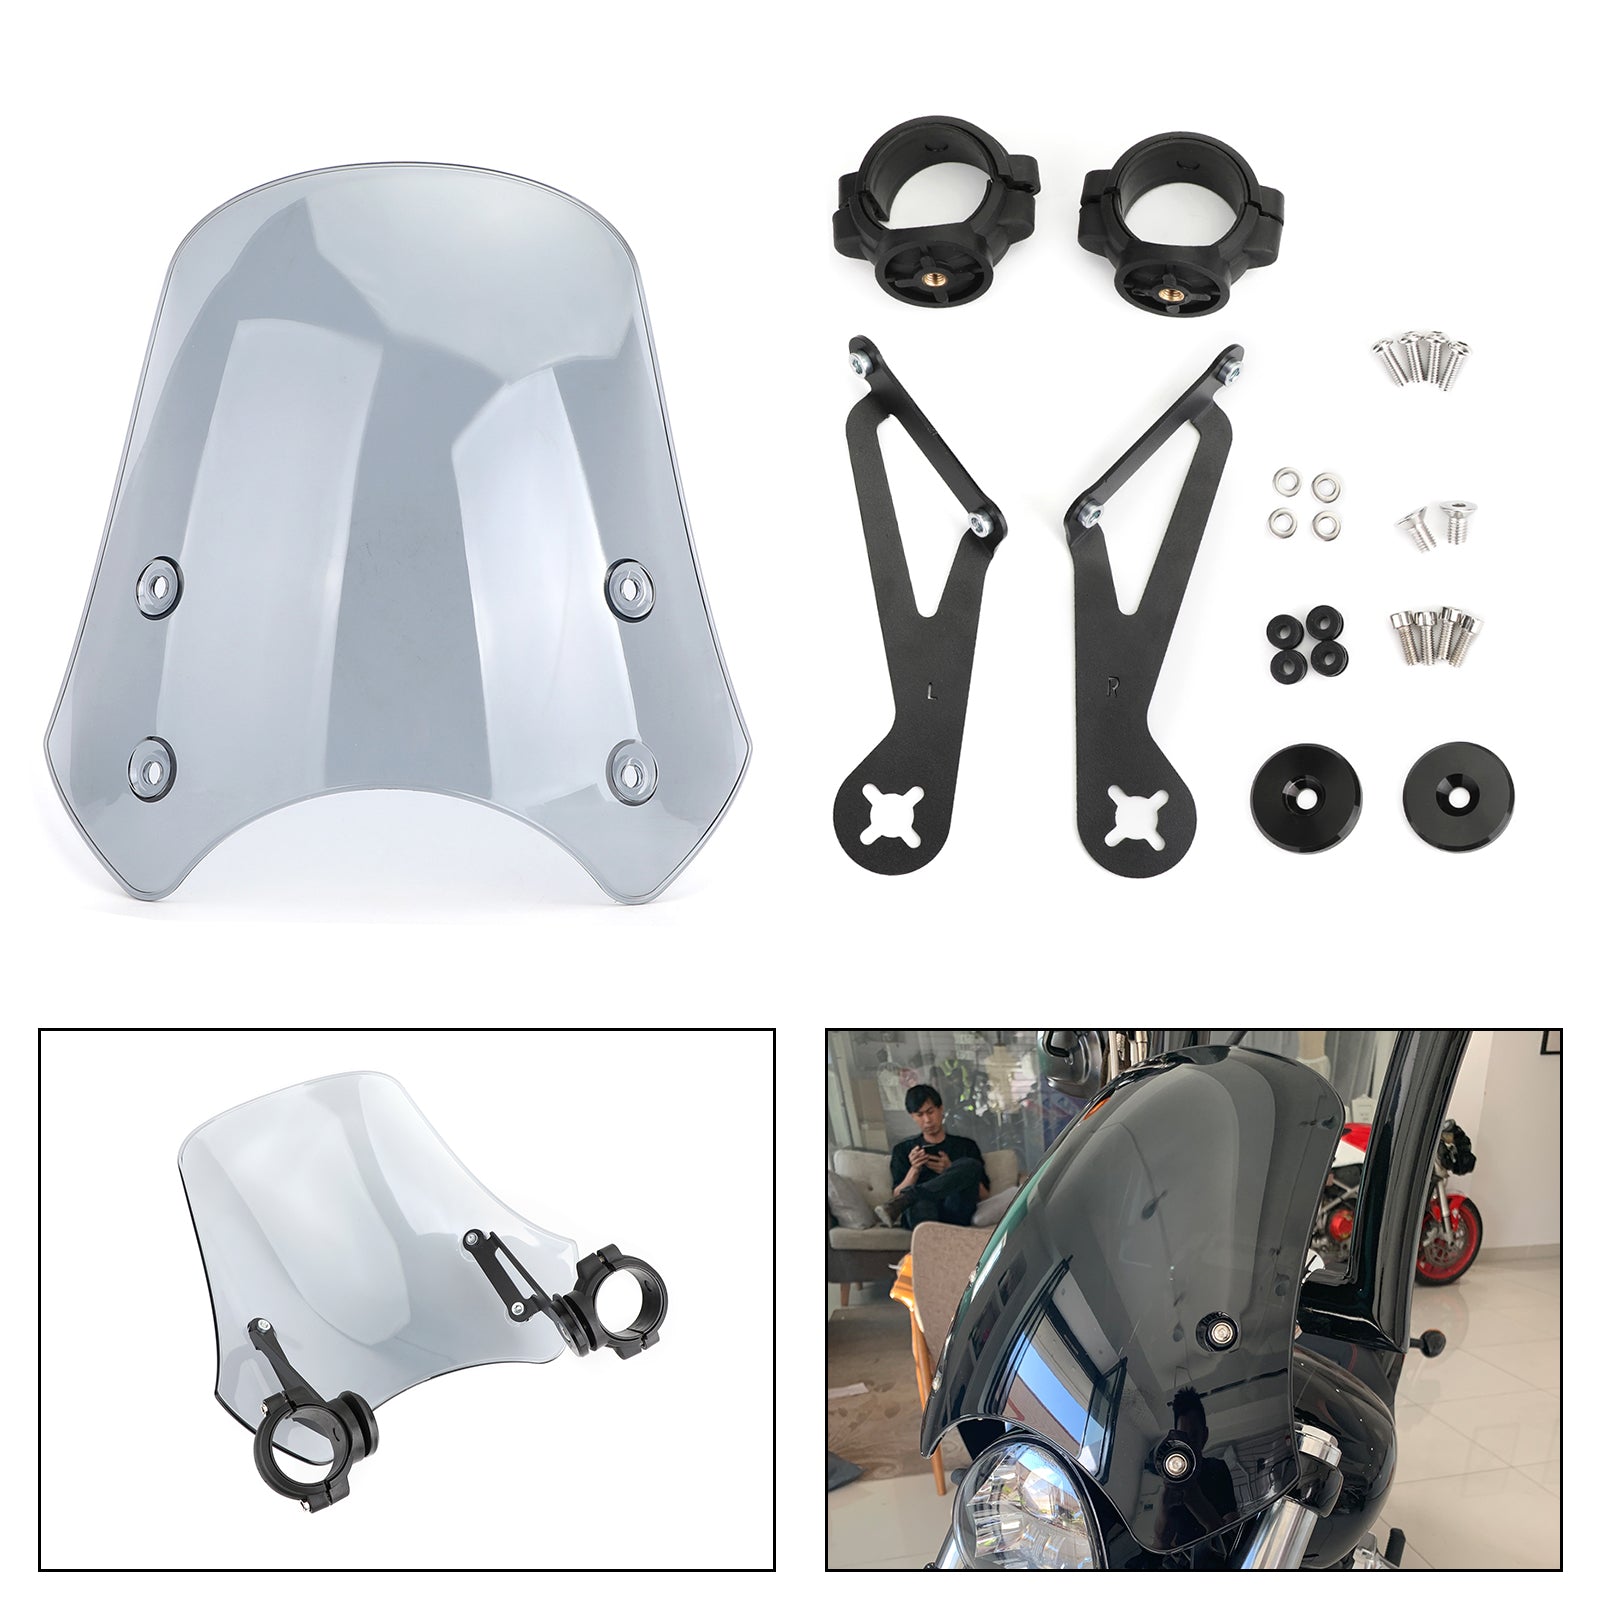 ABS-Motorrad-Windschutzscheibe für Harley Dyna Softail-Modelle, grau, generisch